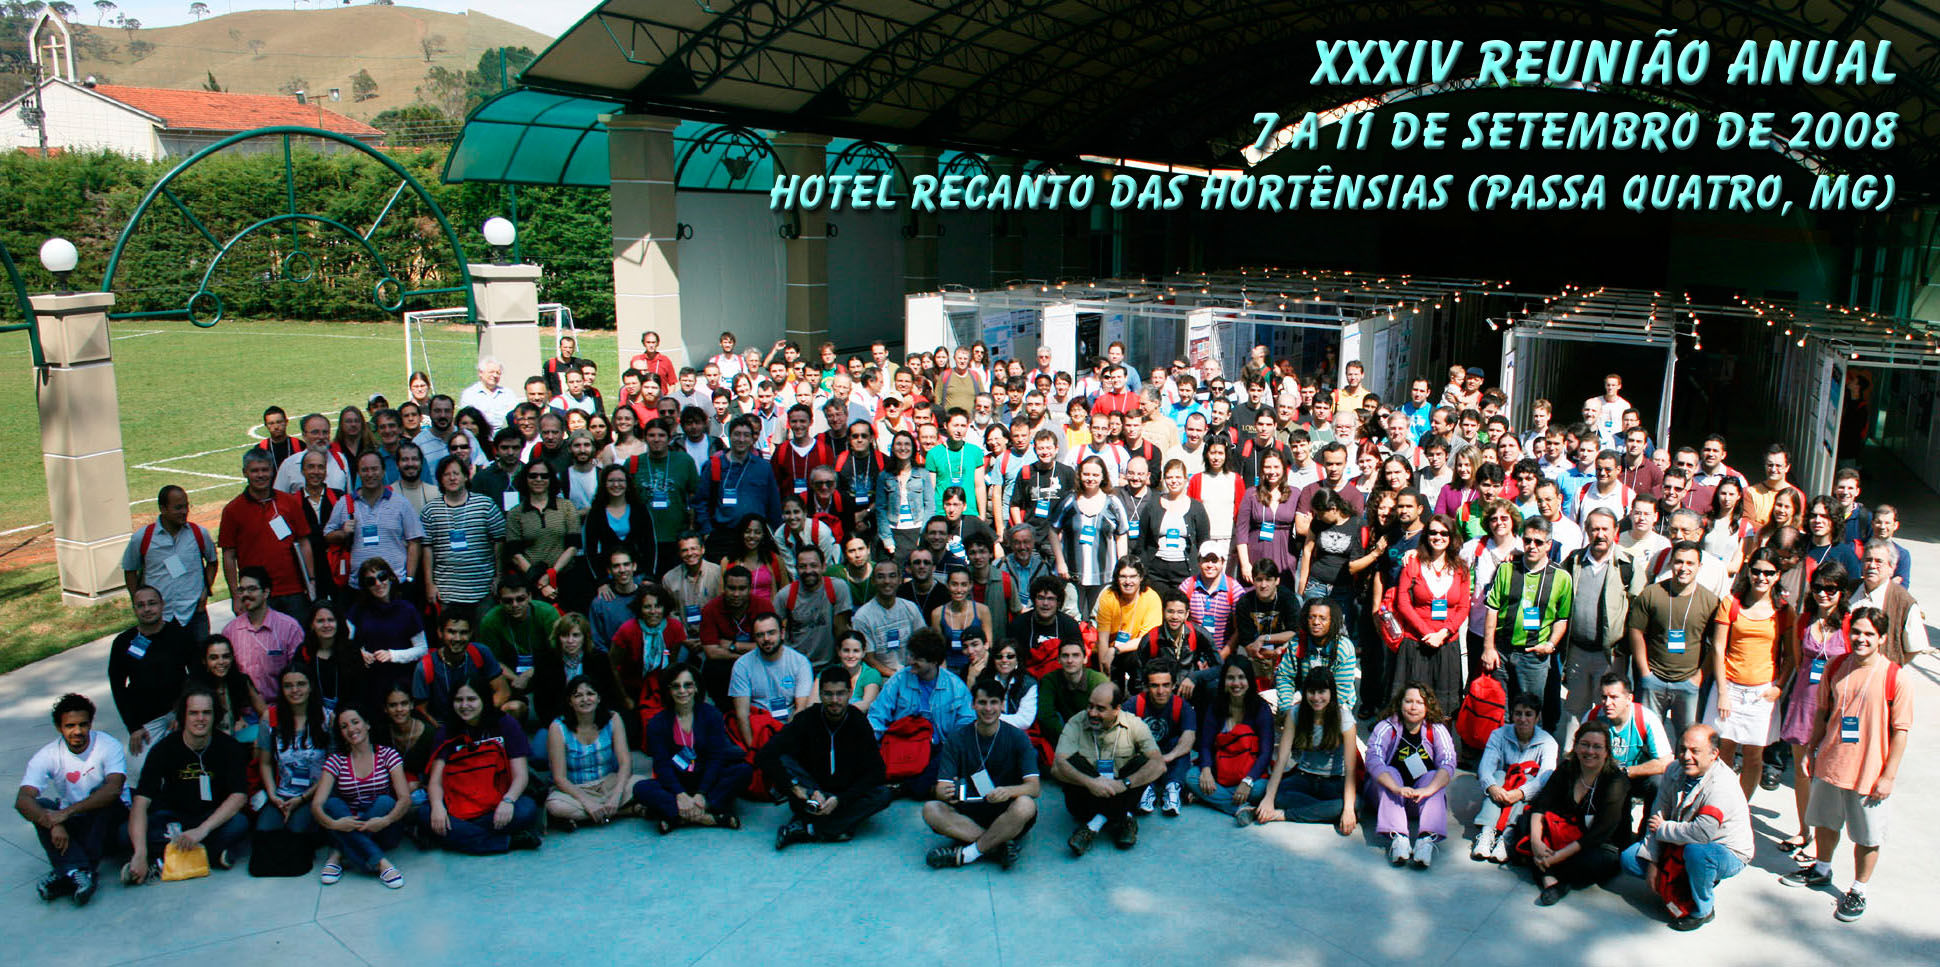 XXXIV Reunião Anual 2008